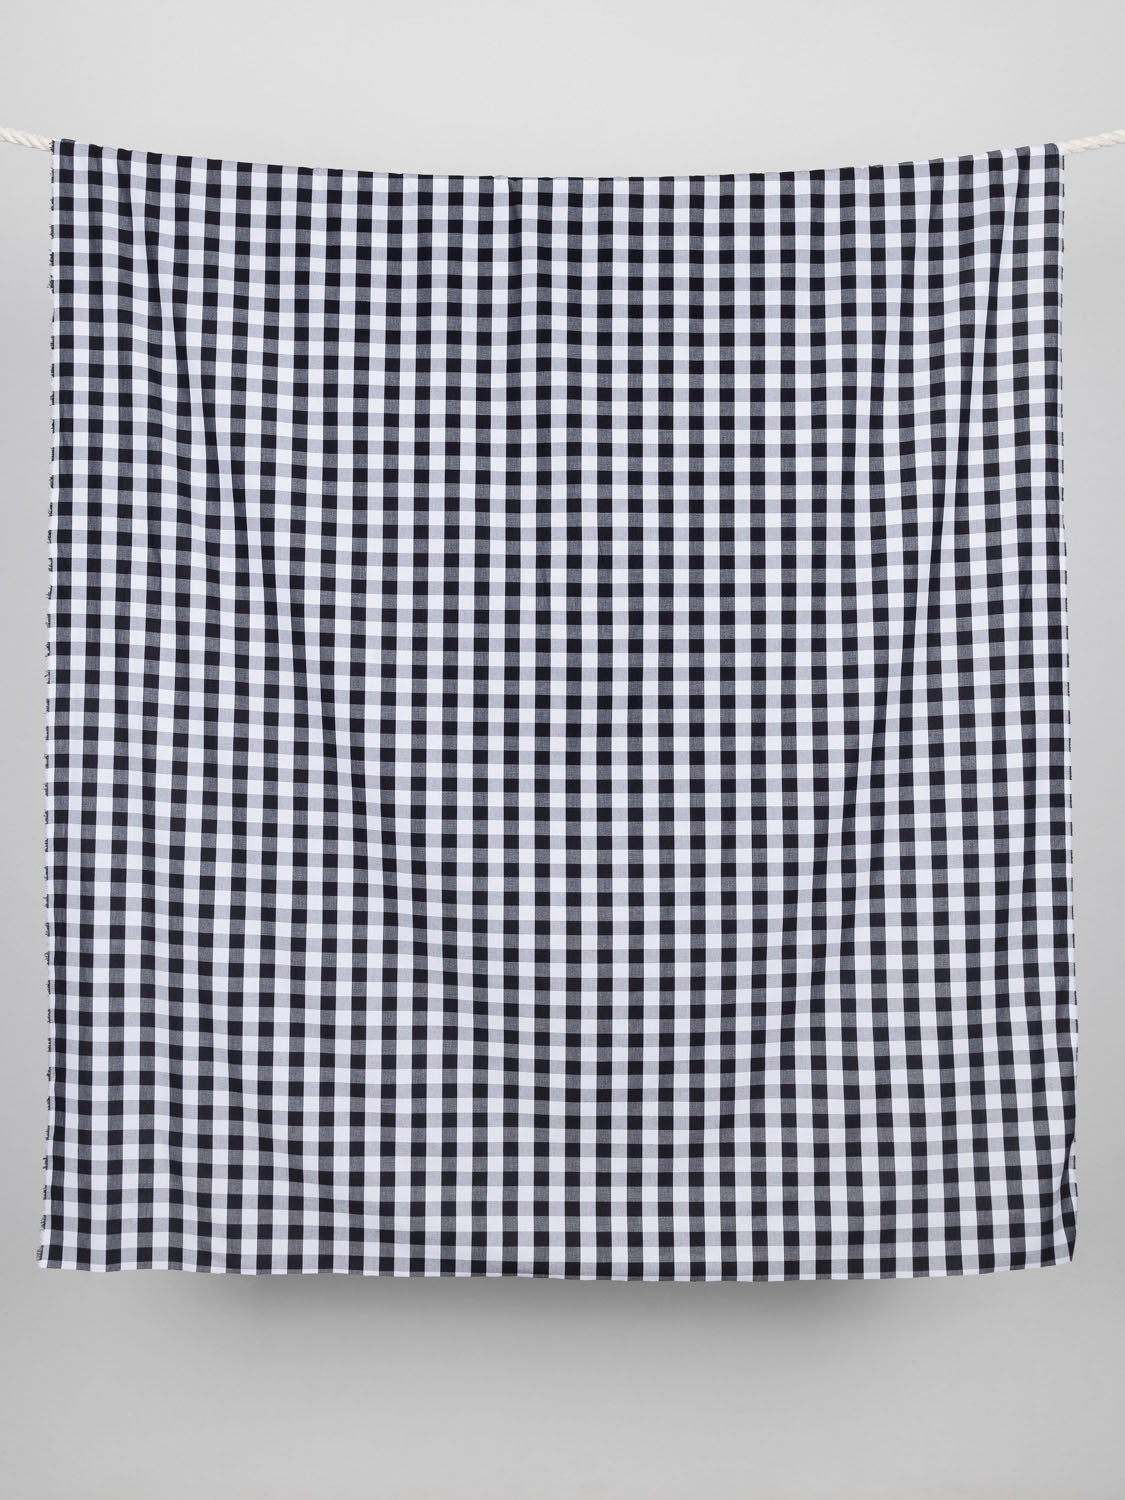 Large Scale Yarn-Dyed Gingham Cotton - Black + White | Core Fabrics